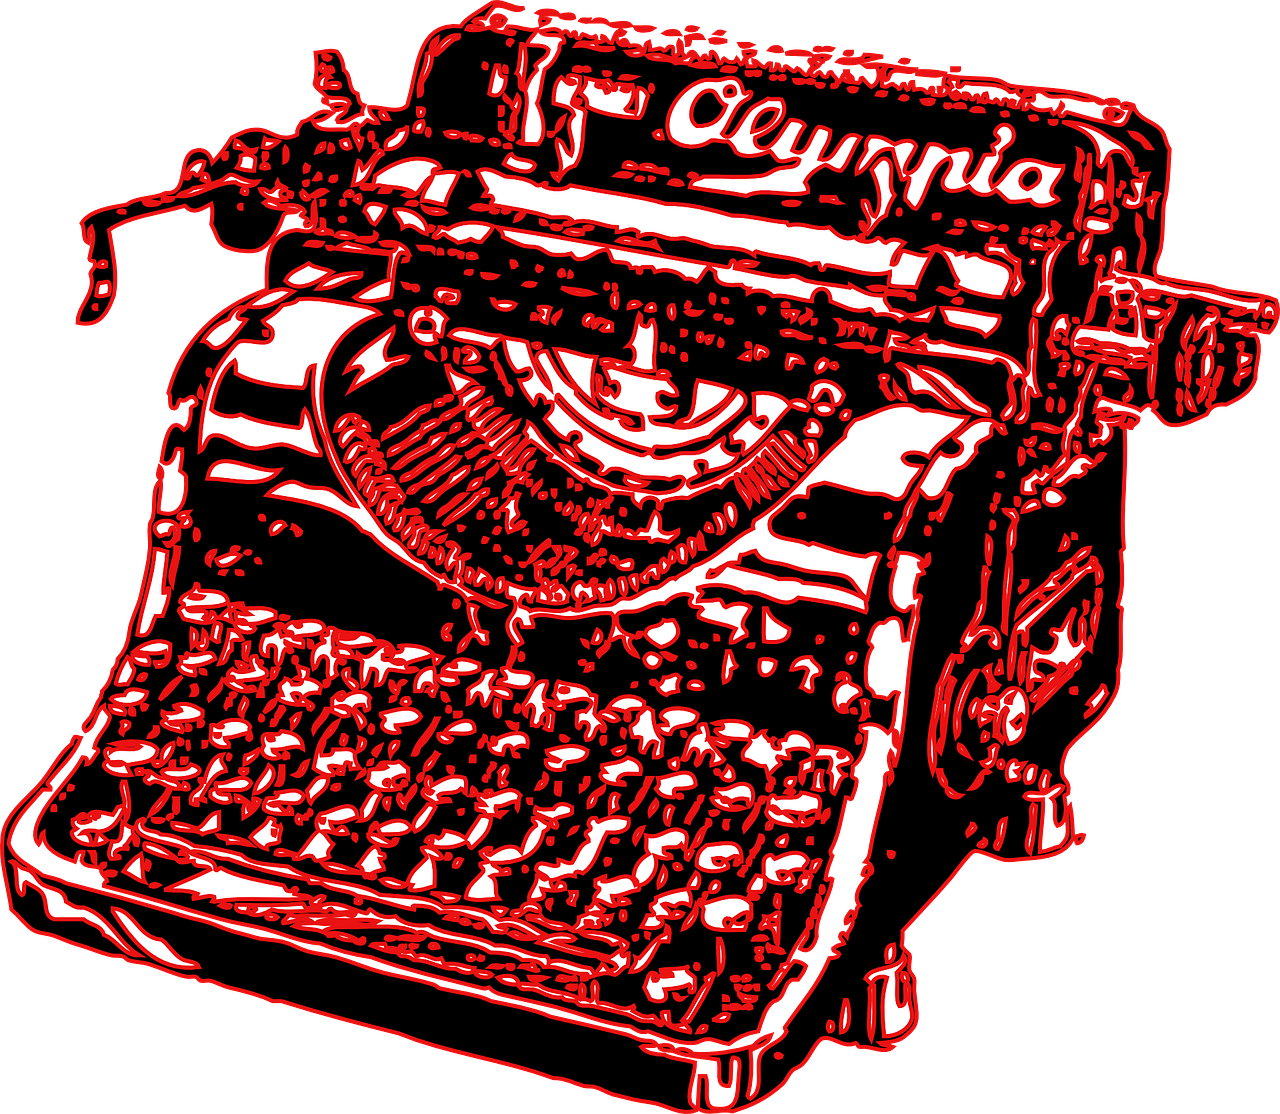 typewriter type writer red free photo